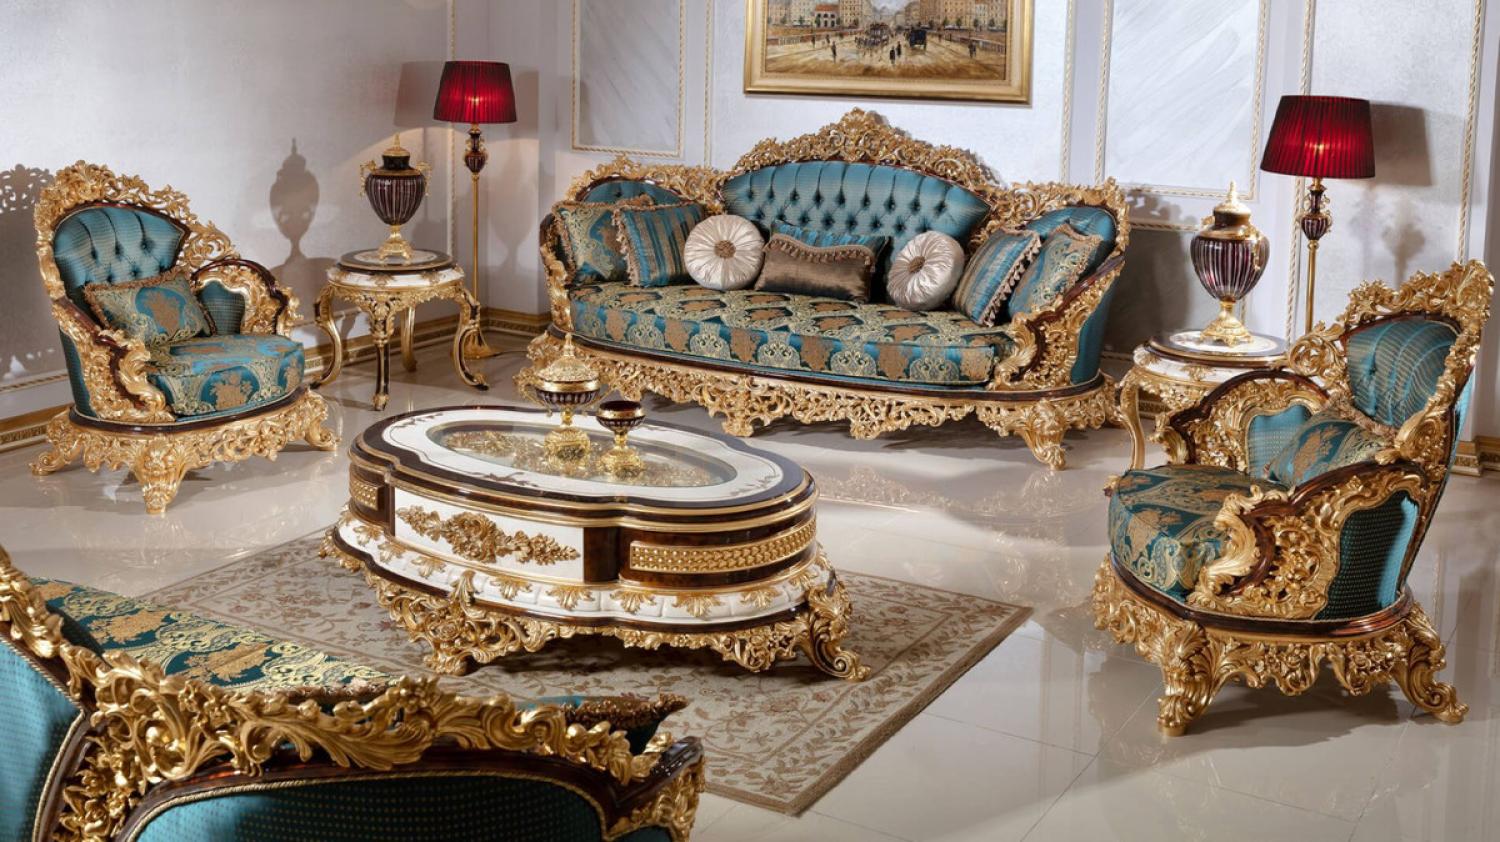 Casa Padrino Luxus Barock Wohnzimmer Set Blau / Weiß / Braun / Gold - 2 Sofas & 2 Sessel & 1 Couchtisch & 2 Beistelltische - Handgefertigte Wohnzimmer Möbel im Barockstil - Edel & Prunkvoll Bild 1